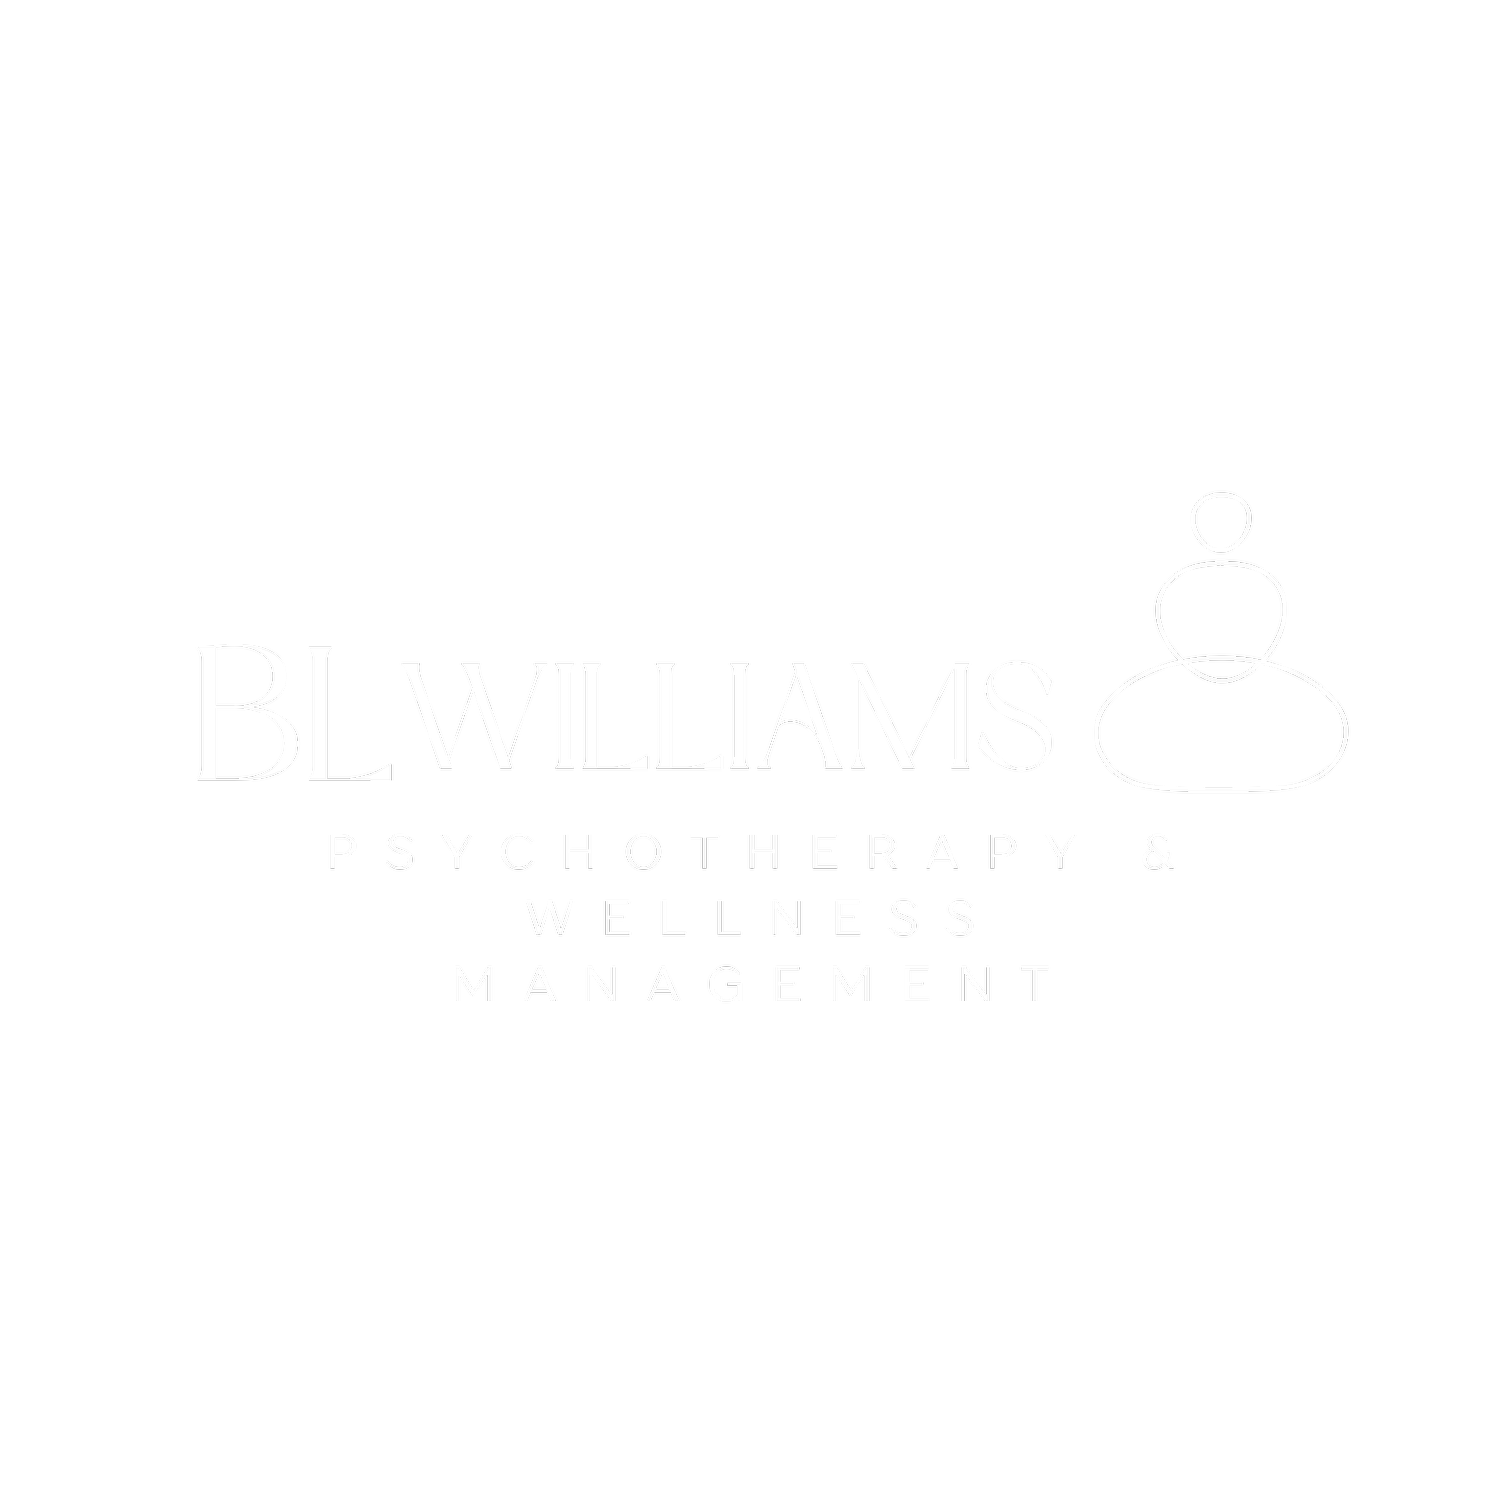 B.L. Williams